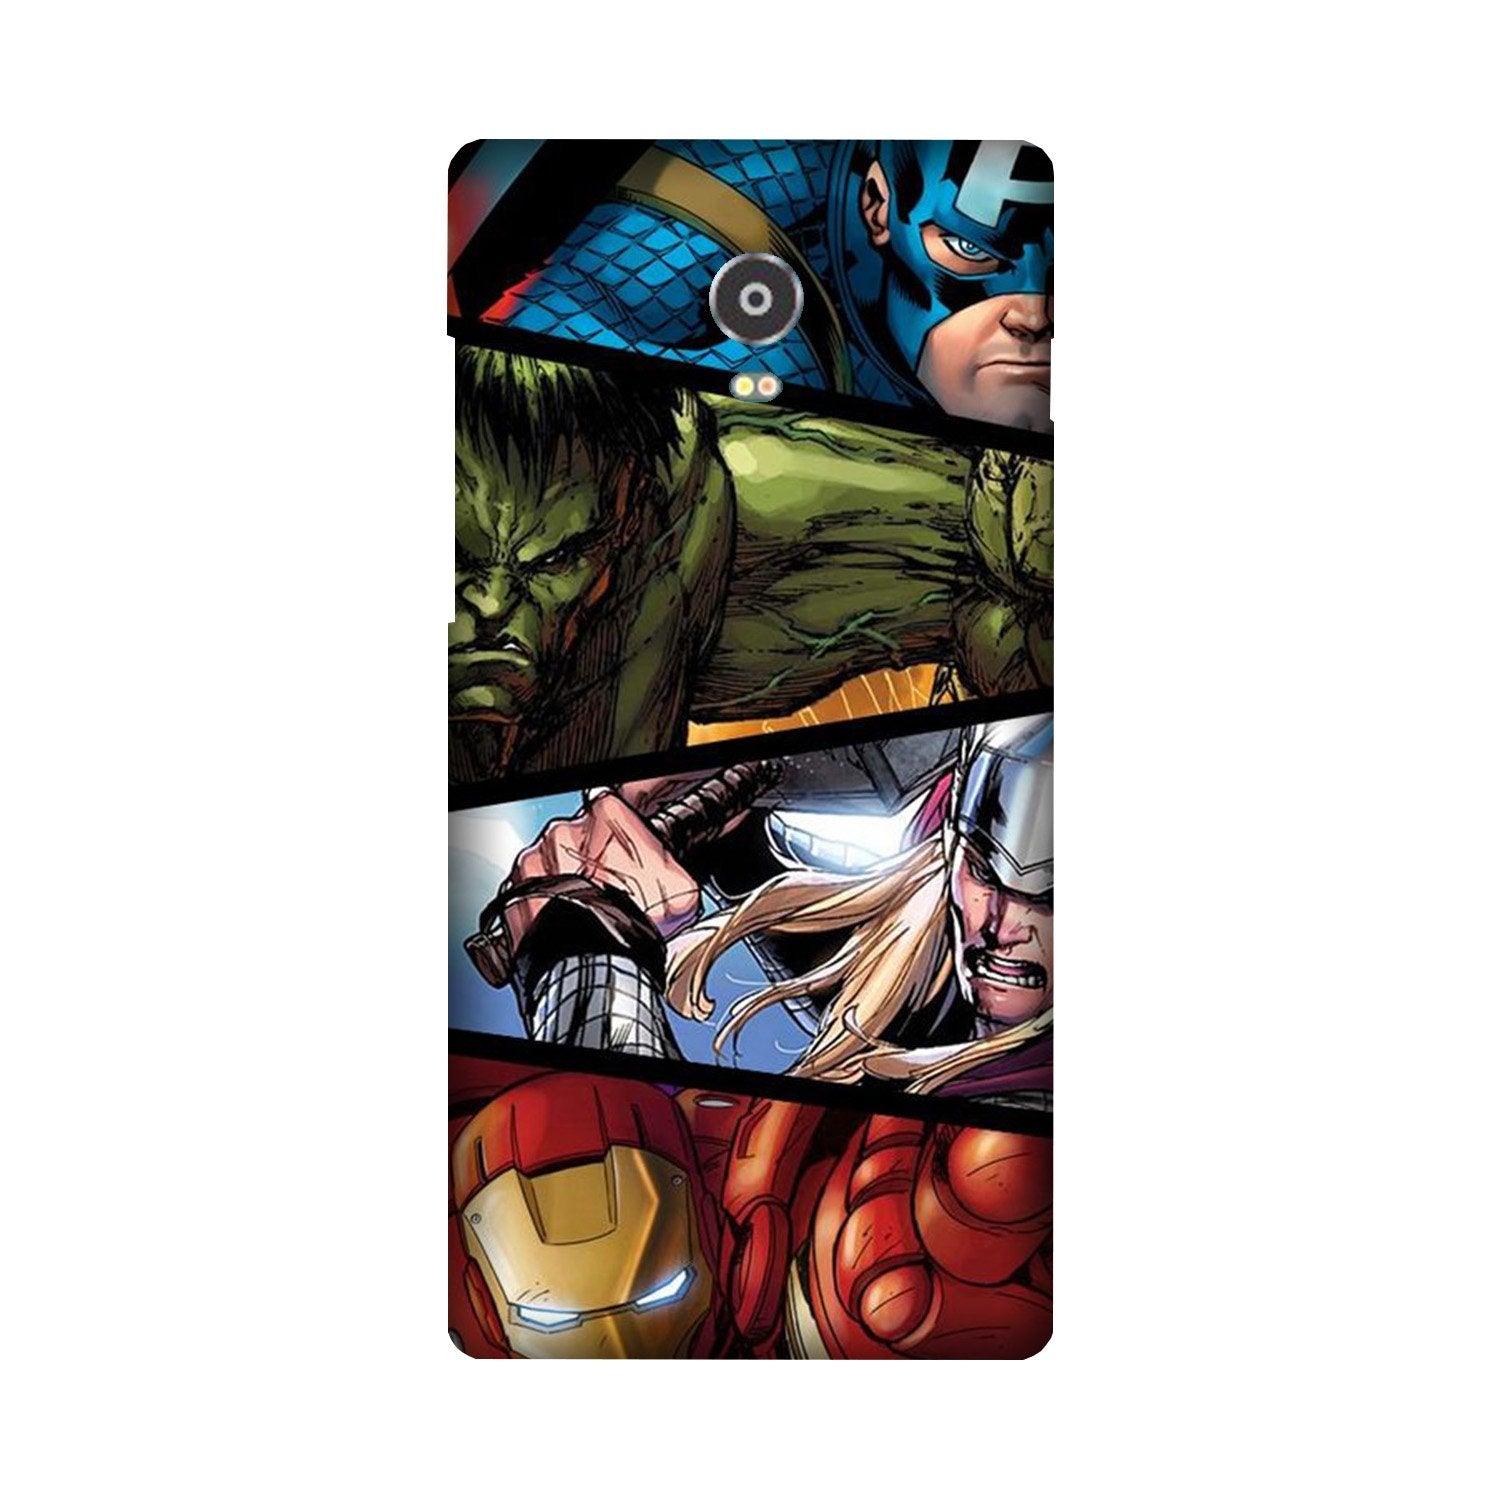 Avengers Superhero Case for Lenovo Vibe P1(Design - 124)